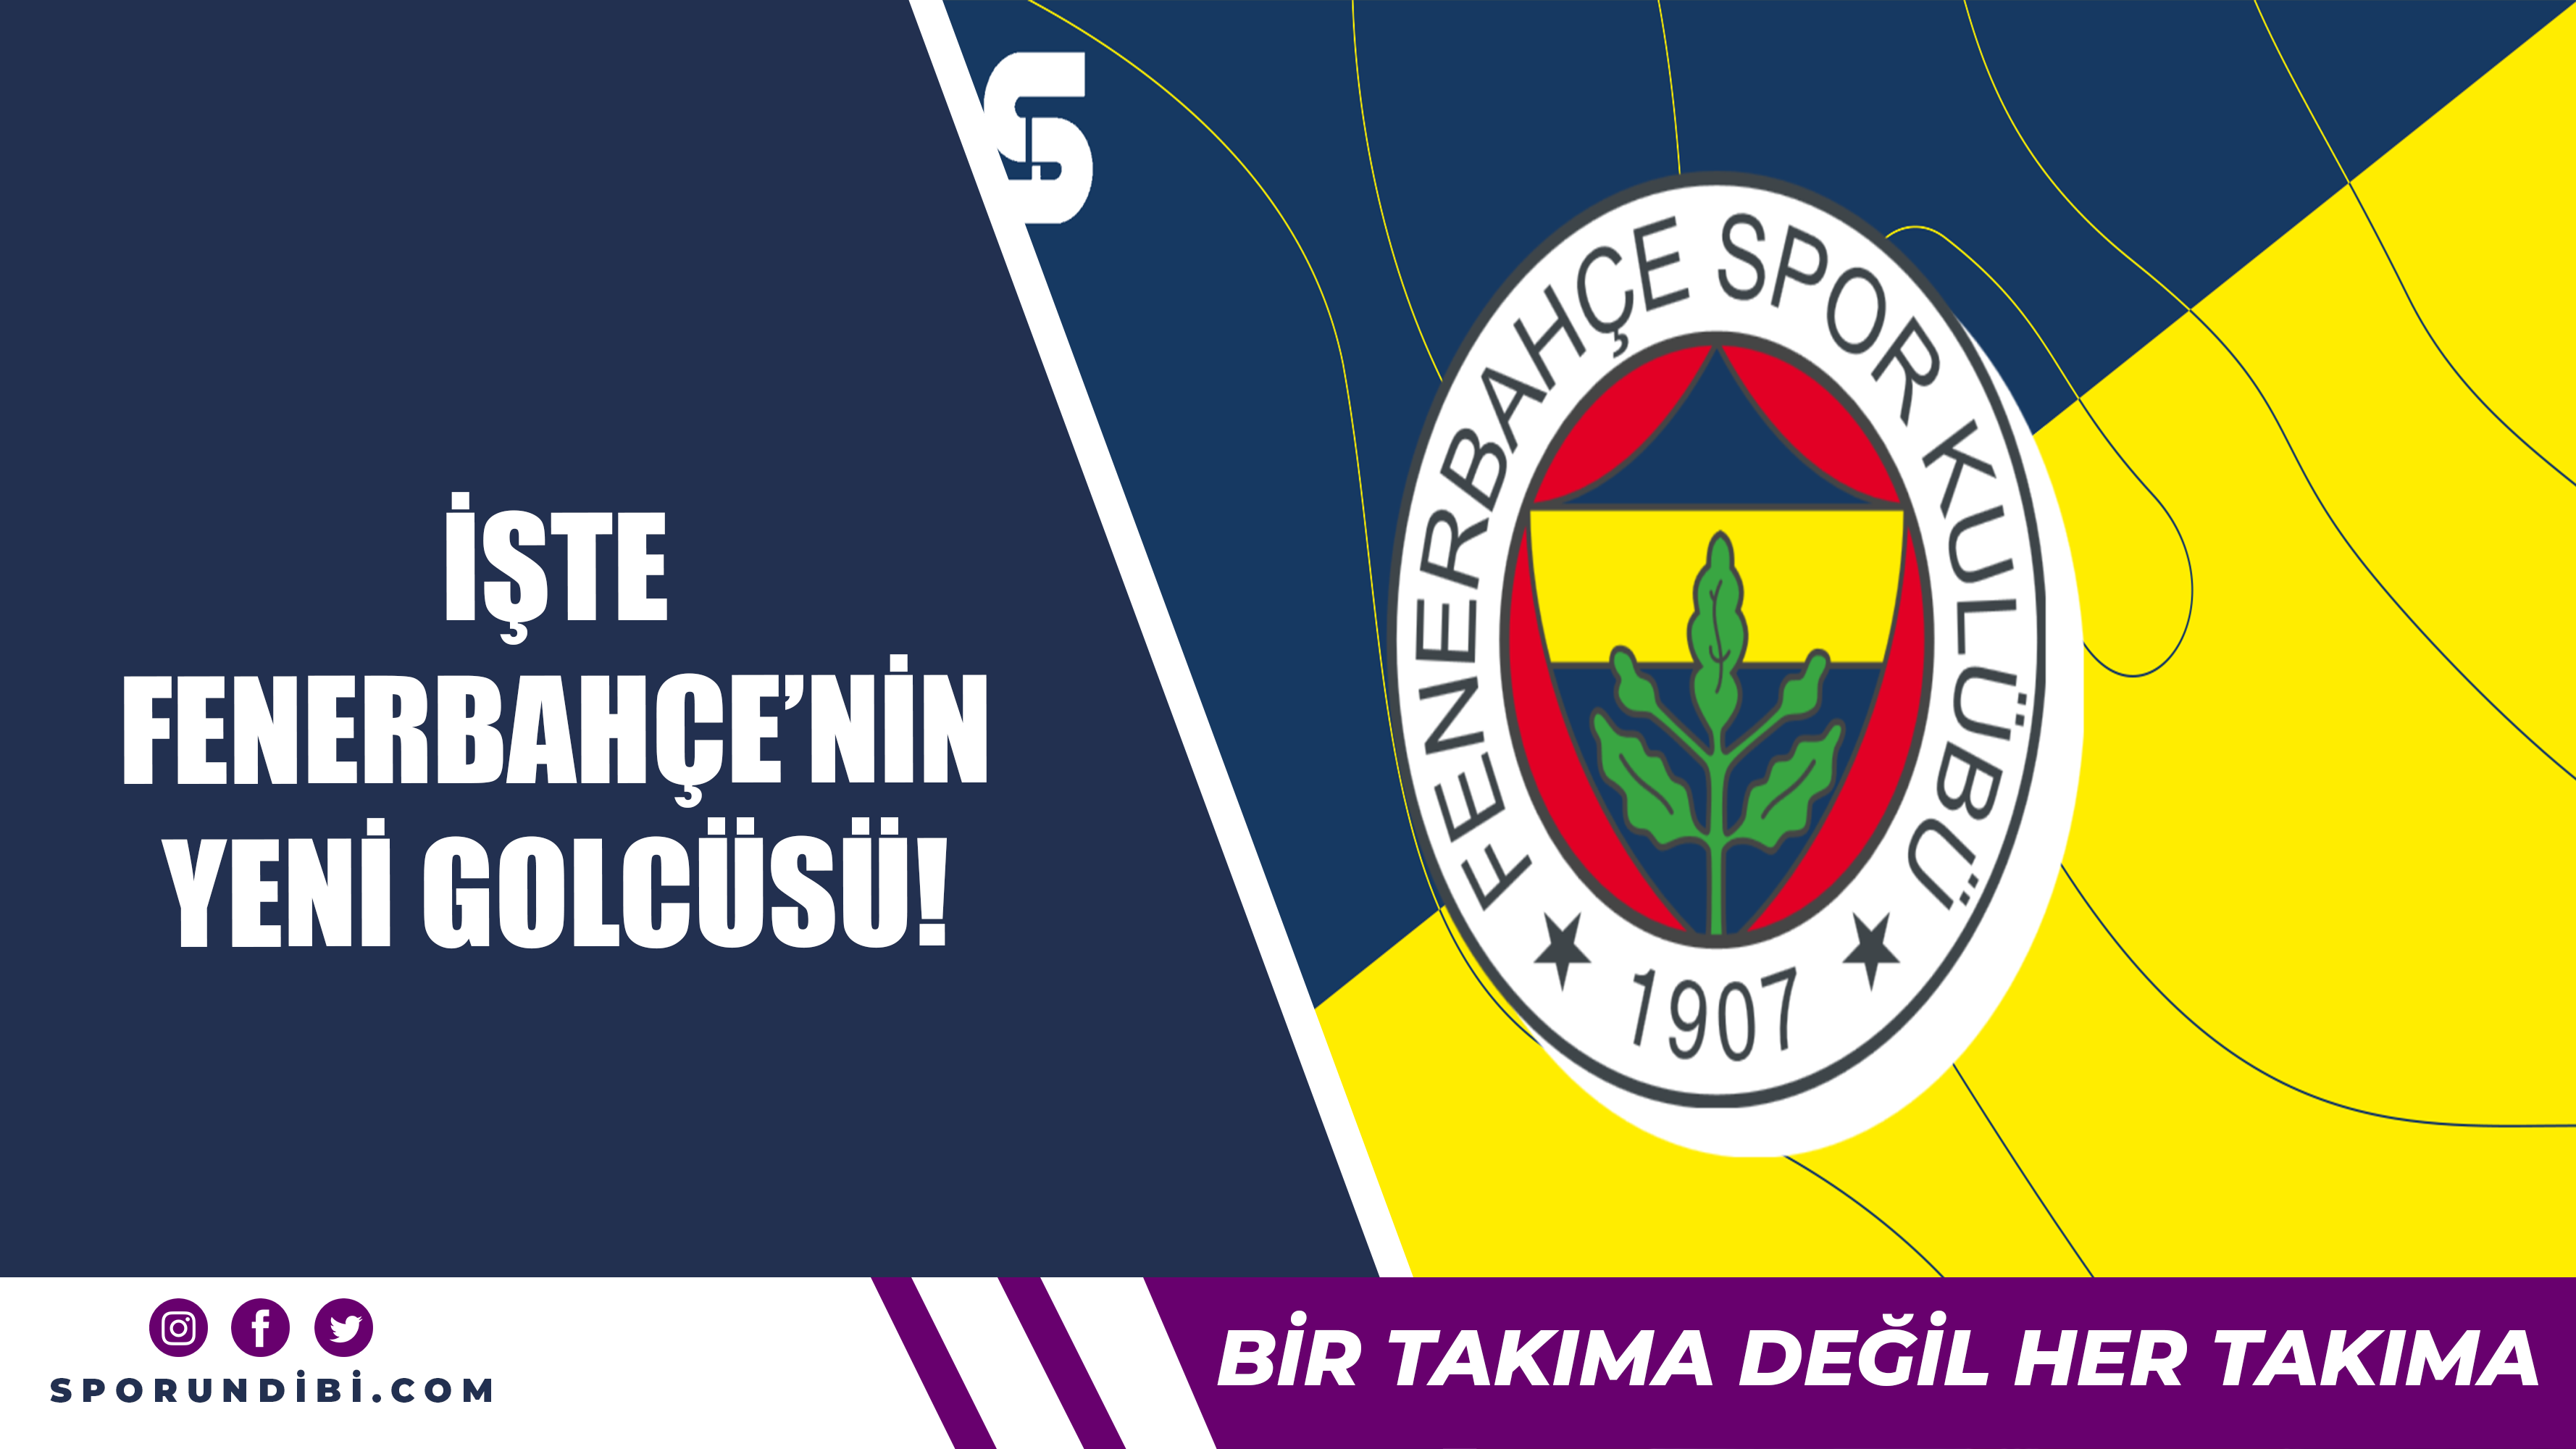 İşte Fenerbahçe'nin yeni golcüsü!